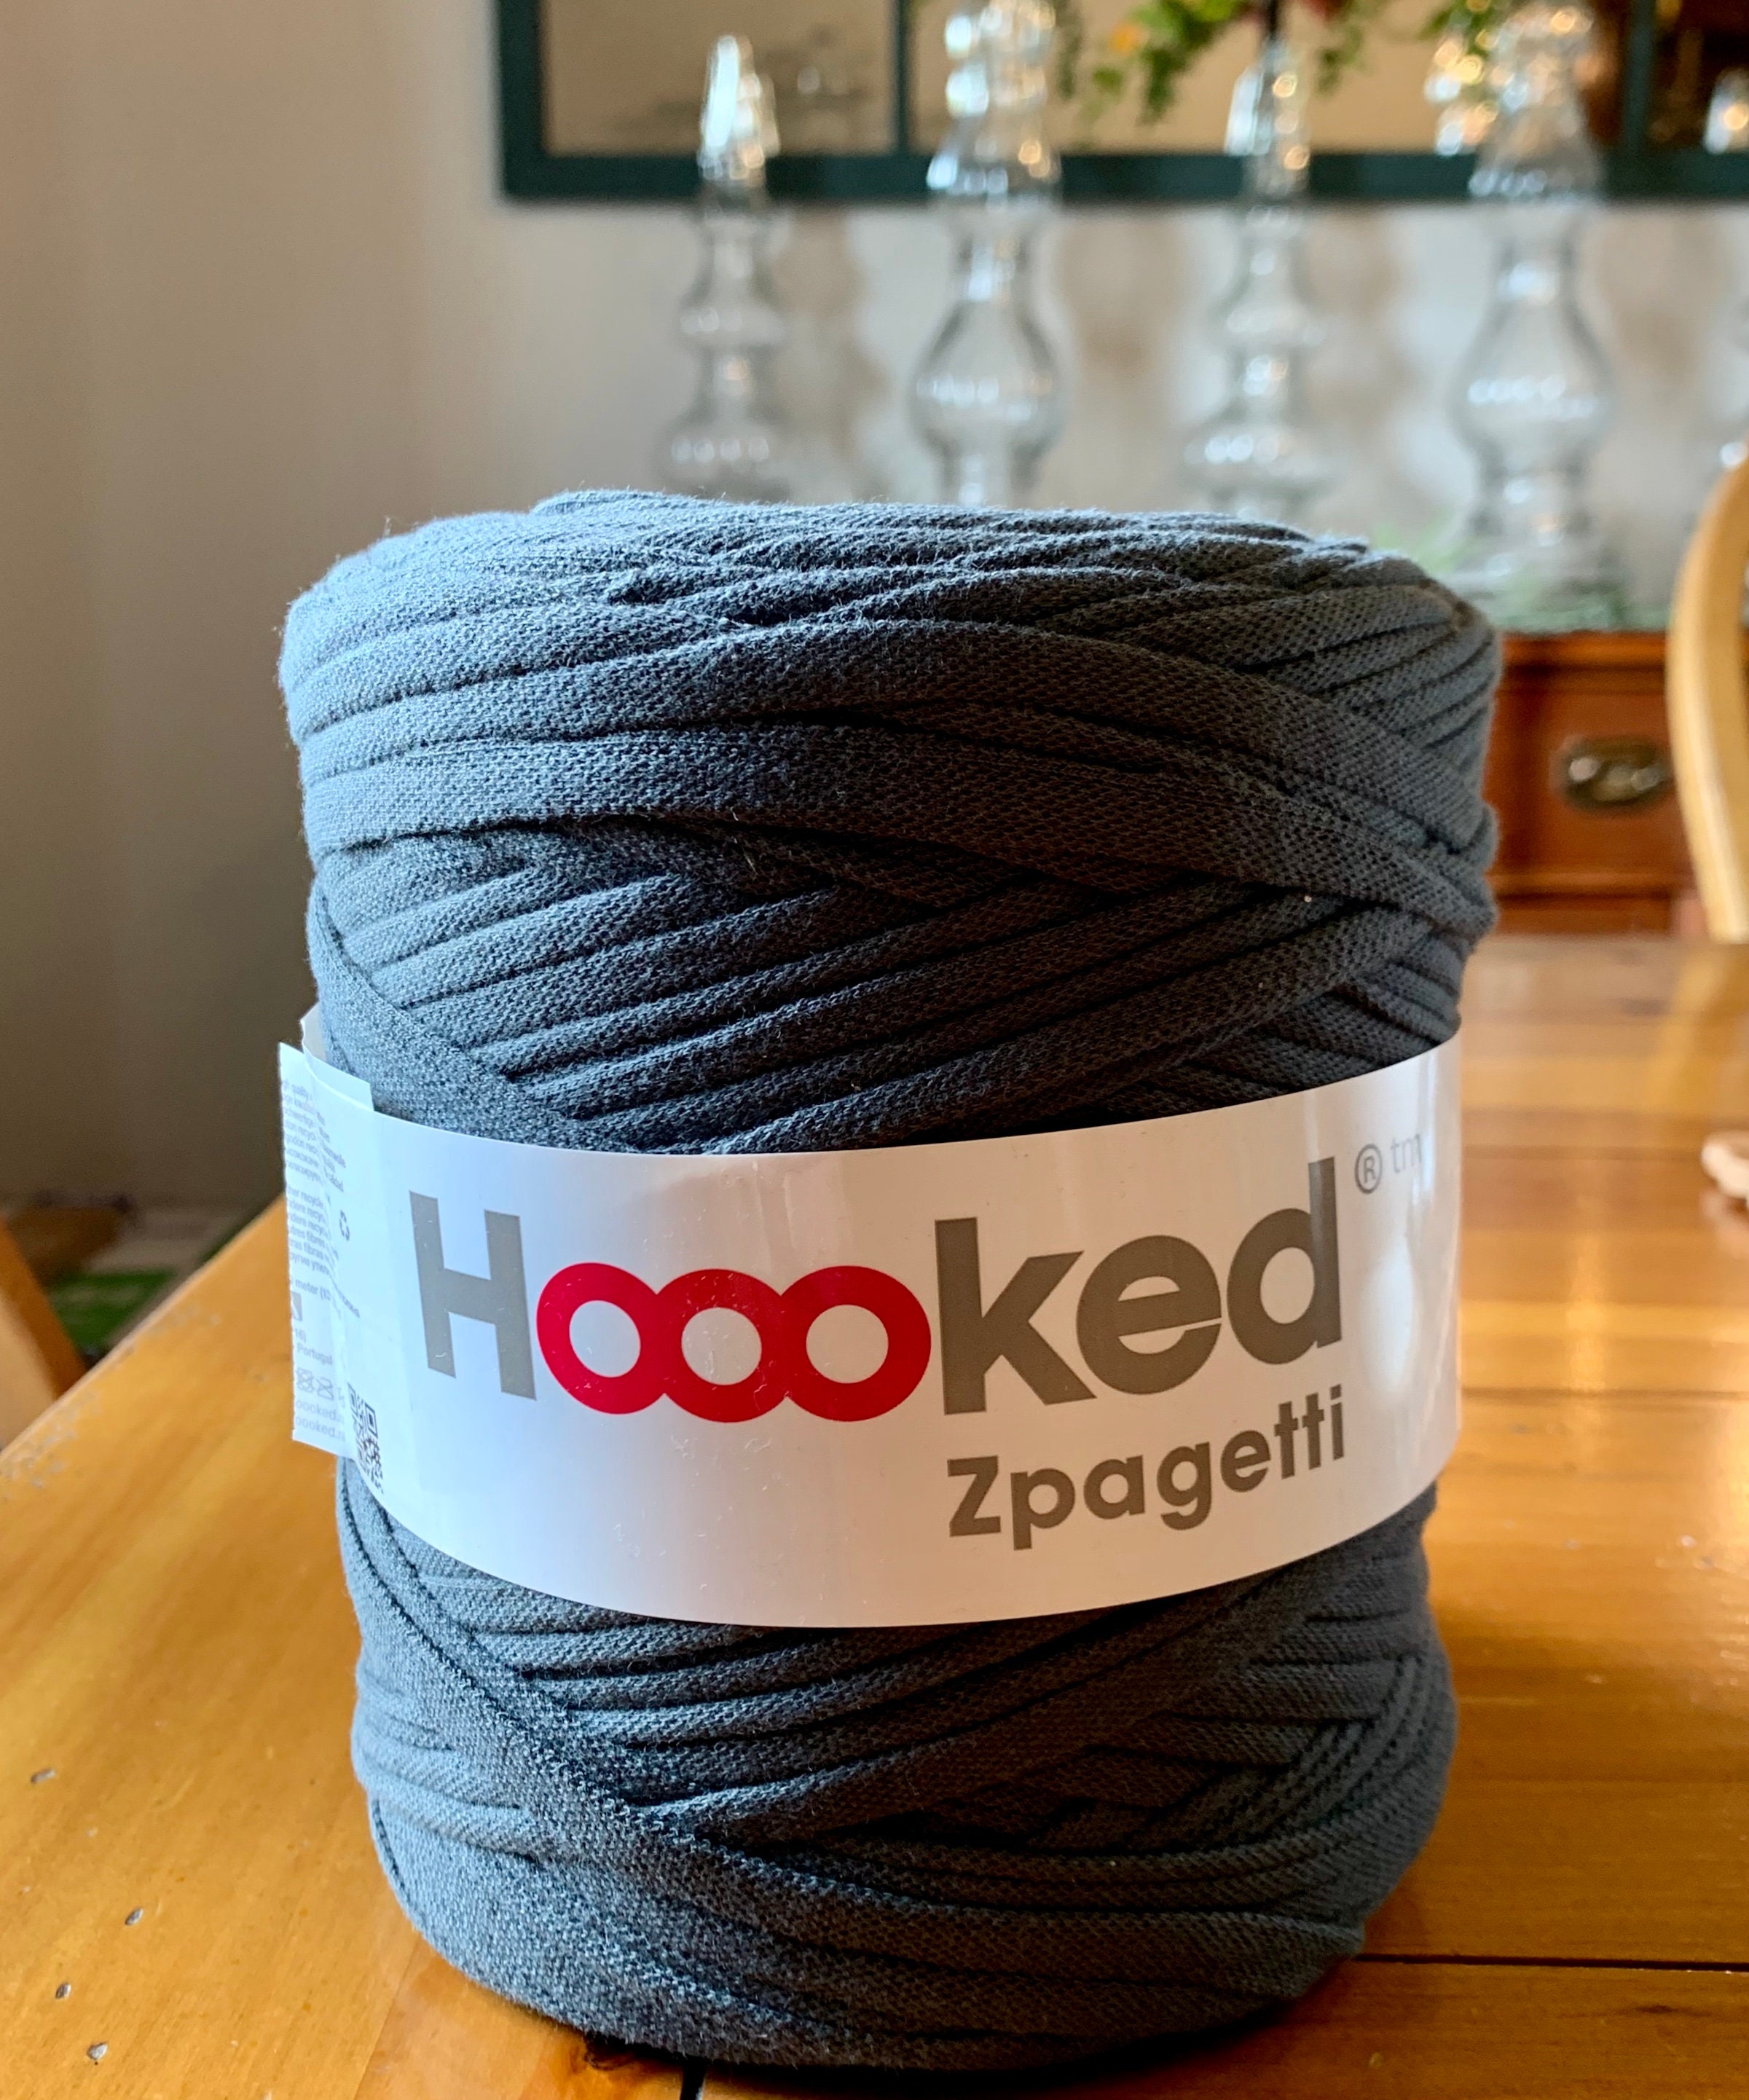 Hoooked Zpagetti Yarn-Anthracite Gray - Dark Gray Shades